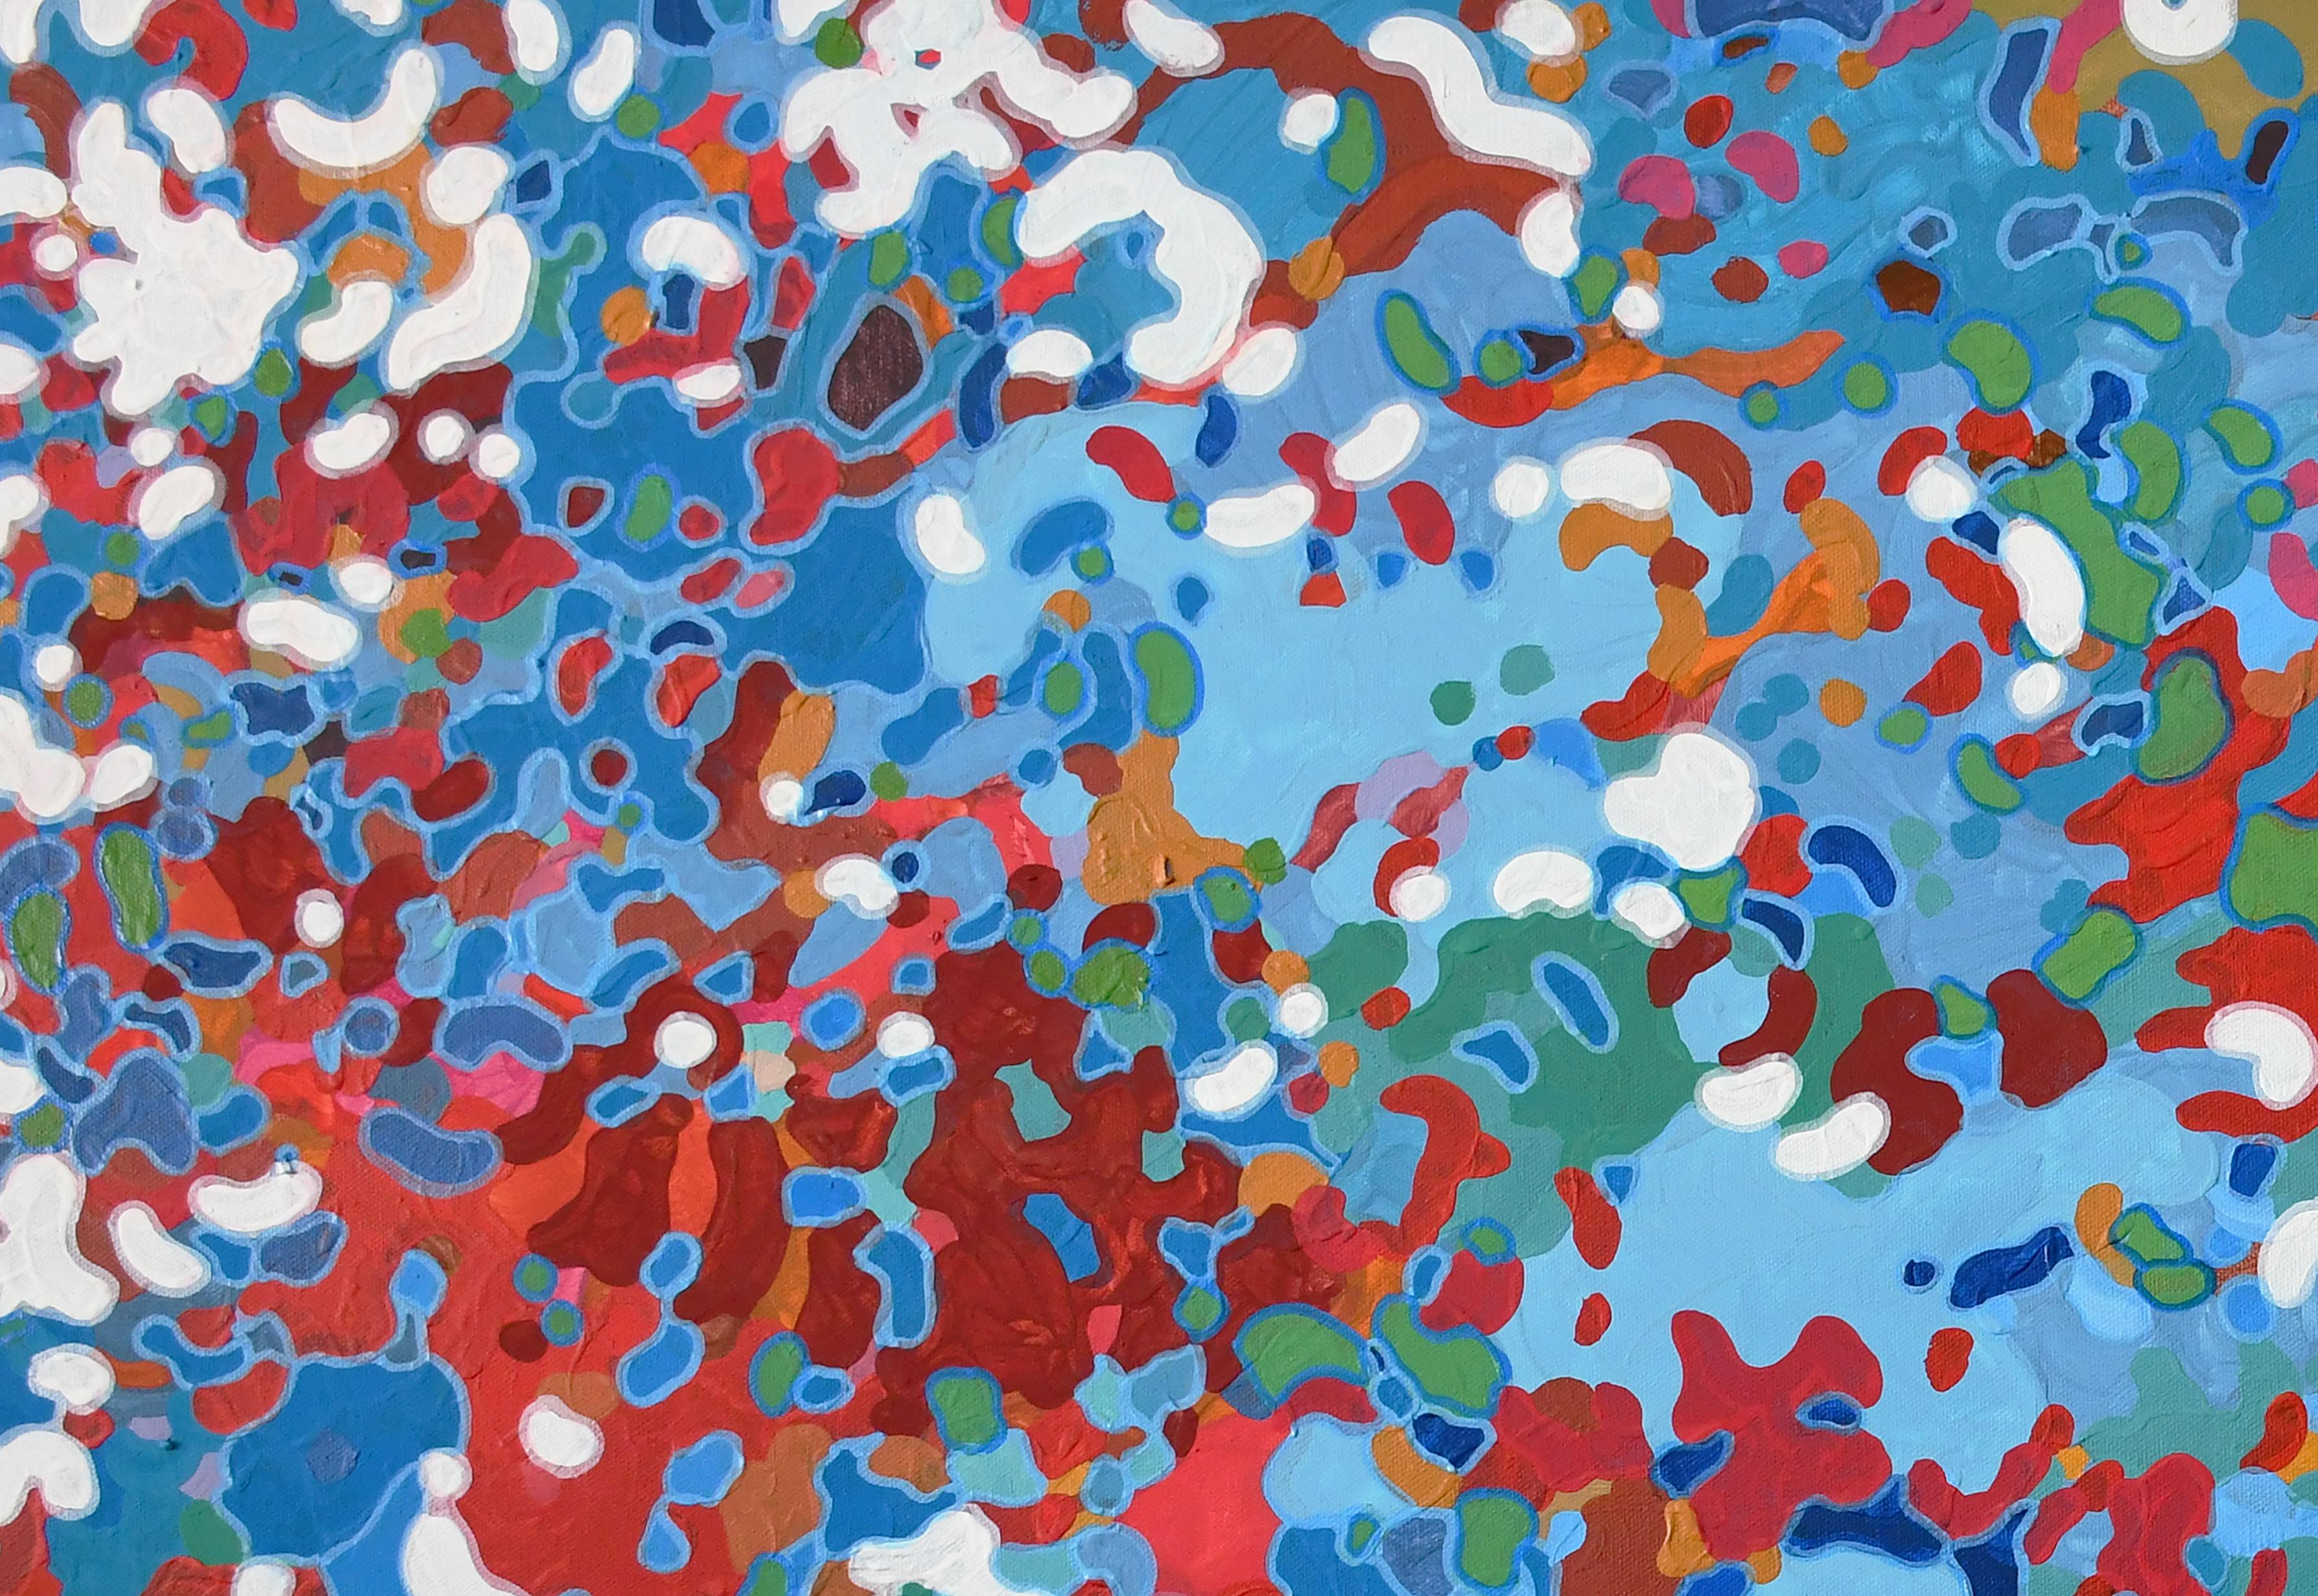 Commemorate, peinture abstraite contemporaine originale rouge, blanche et bleue - Abstrait Painting par Margaret Juul